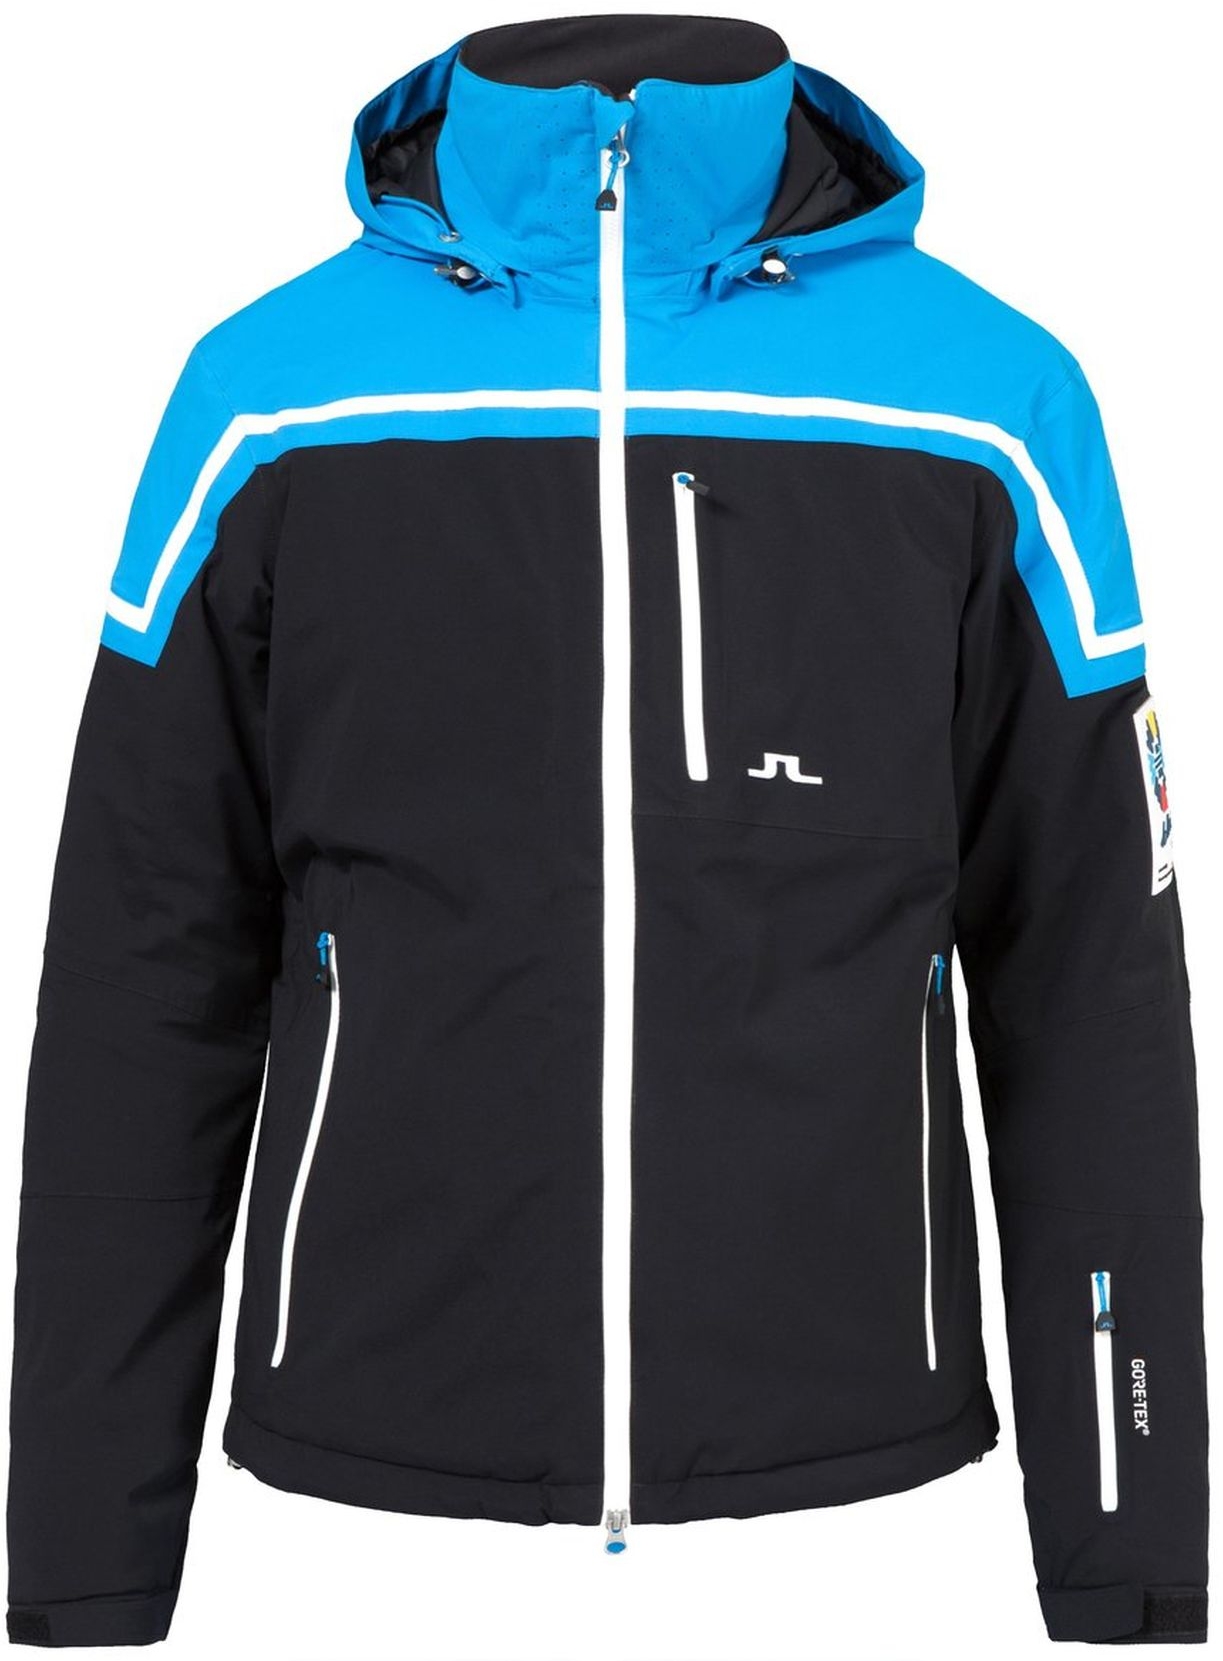 J.Lindeberg St Moritz Prindle Jacket, £510